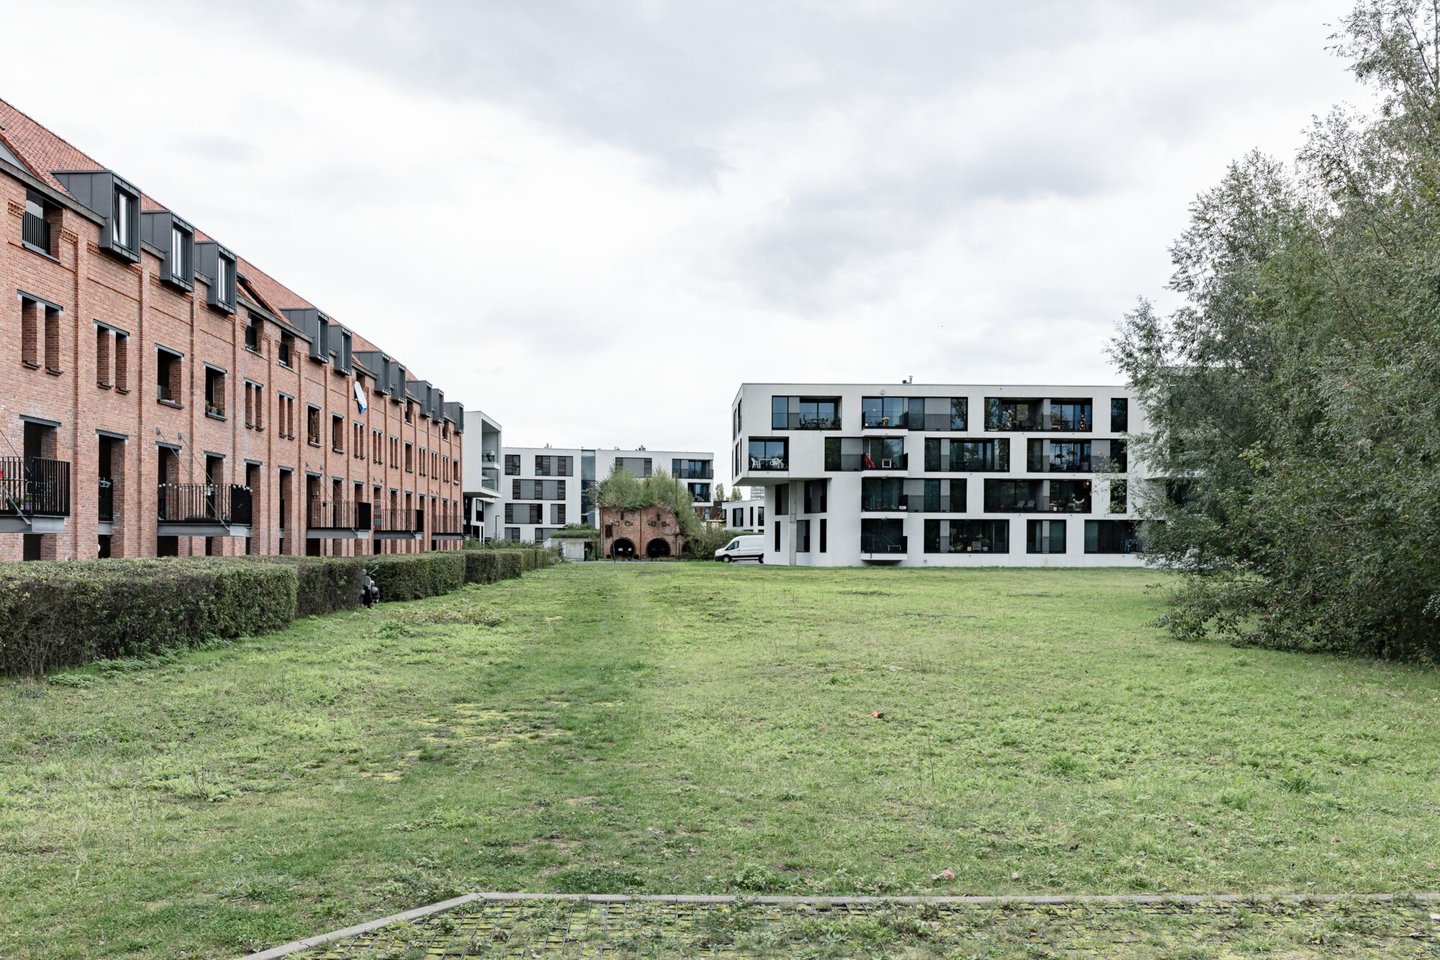 Woonwijk op voormalige site textielfabriek Alsberge-Van Oost in Gent